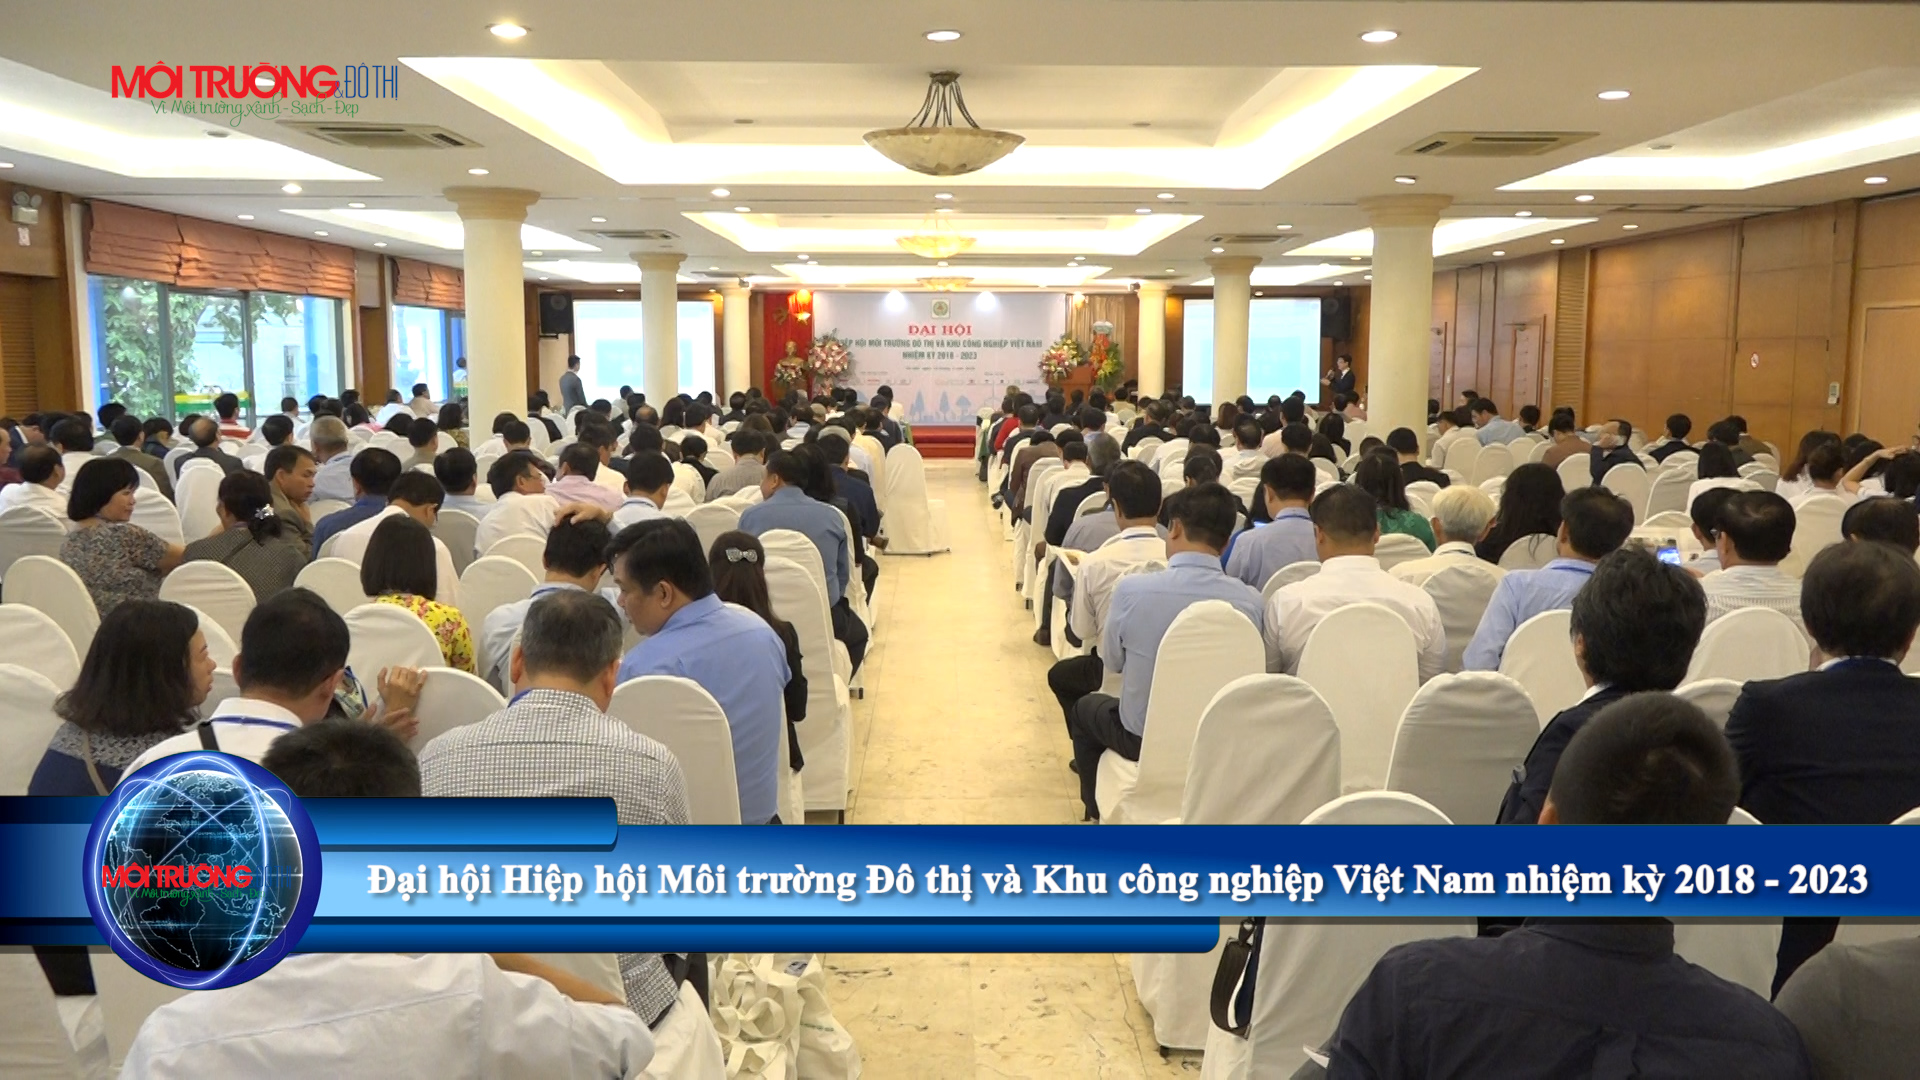 [Video] Đại hội Hiệp hội Môi trường Đô thị và KCN Việt Nam lần thứ V